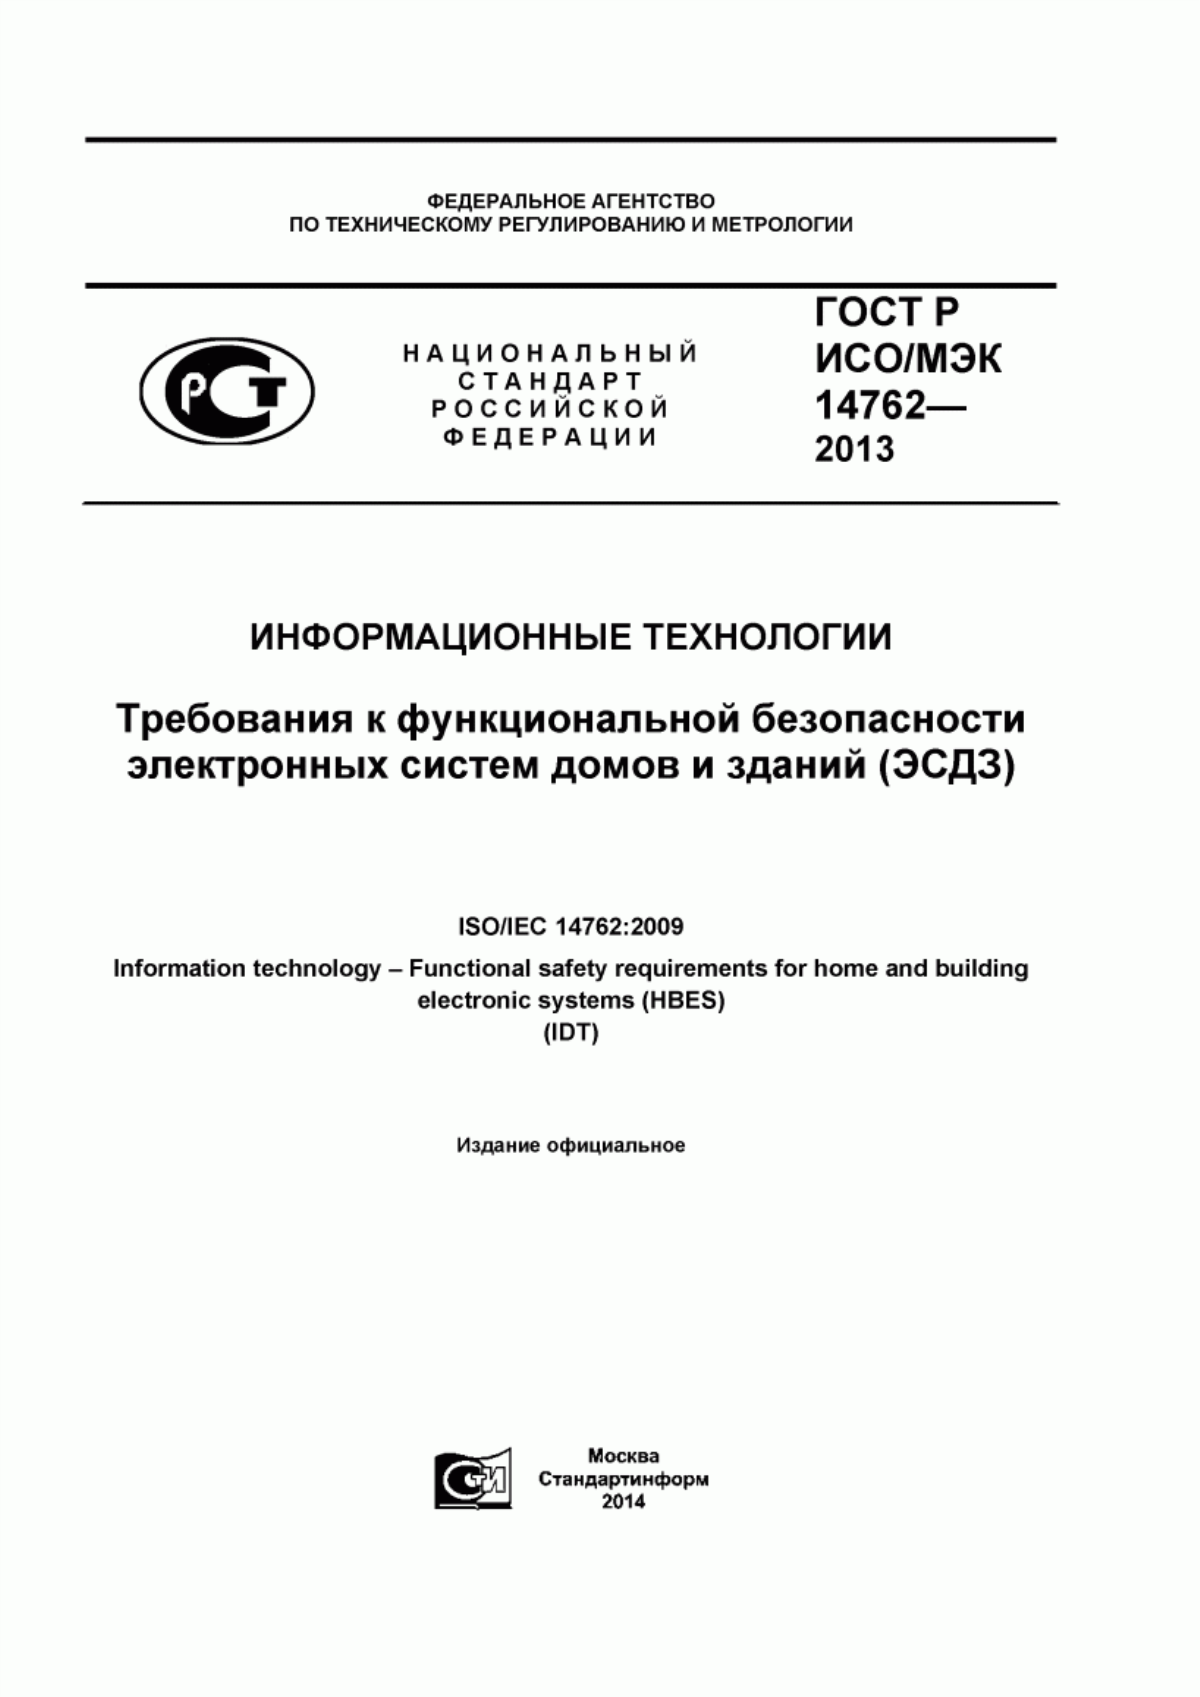 ГОСТ Р ИСО/МЭК 14762-2013 Информационные технологии. Требования к функциональной безопасности электронных систем домов и зданий (ЭСДЗ)